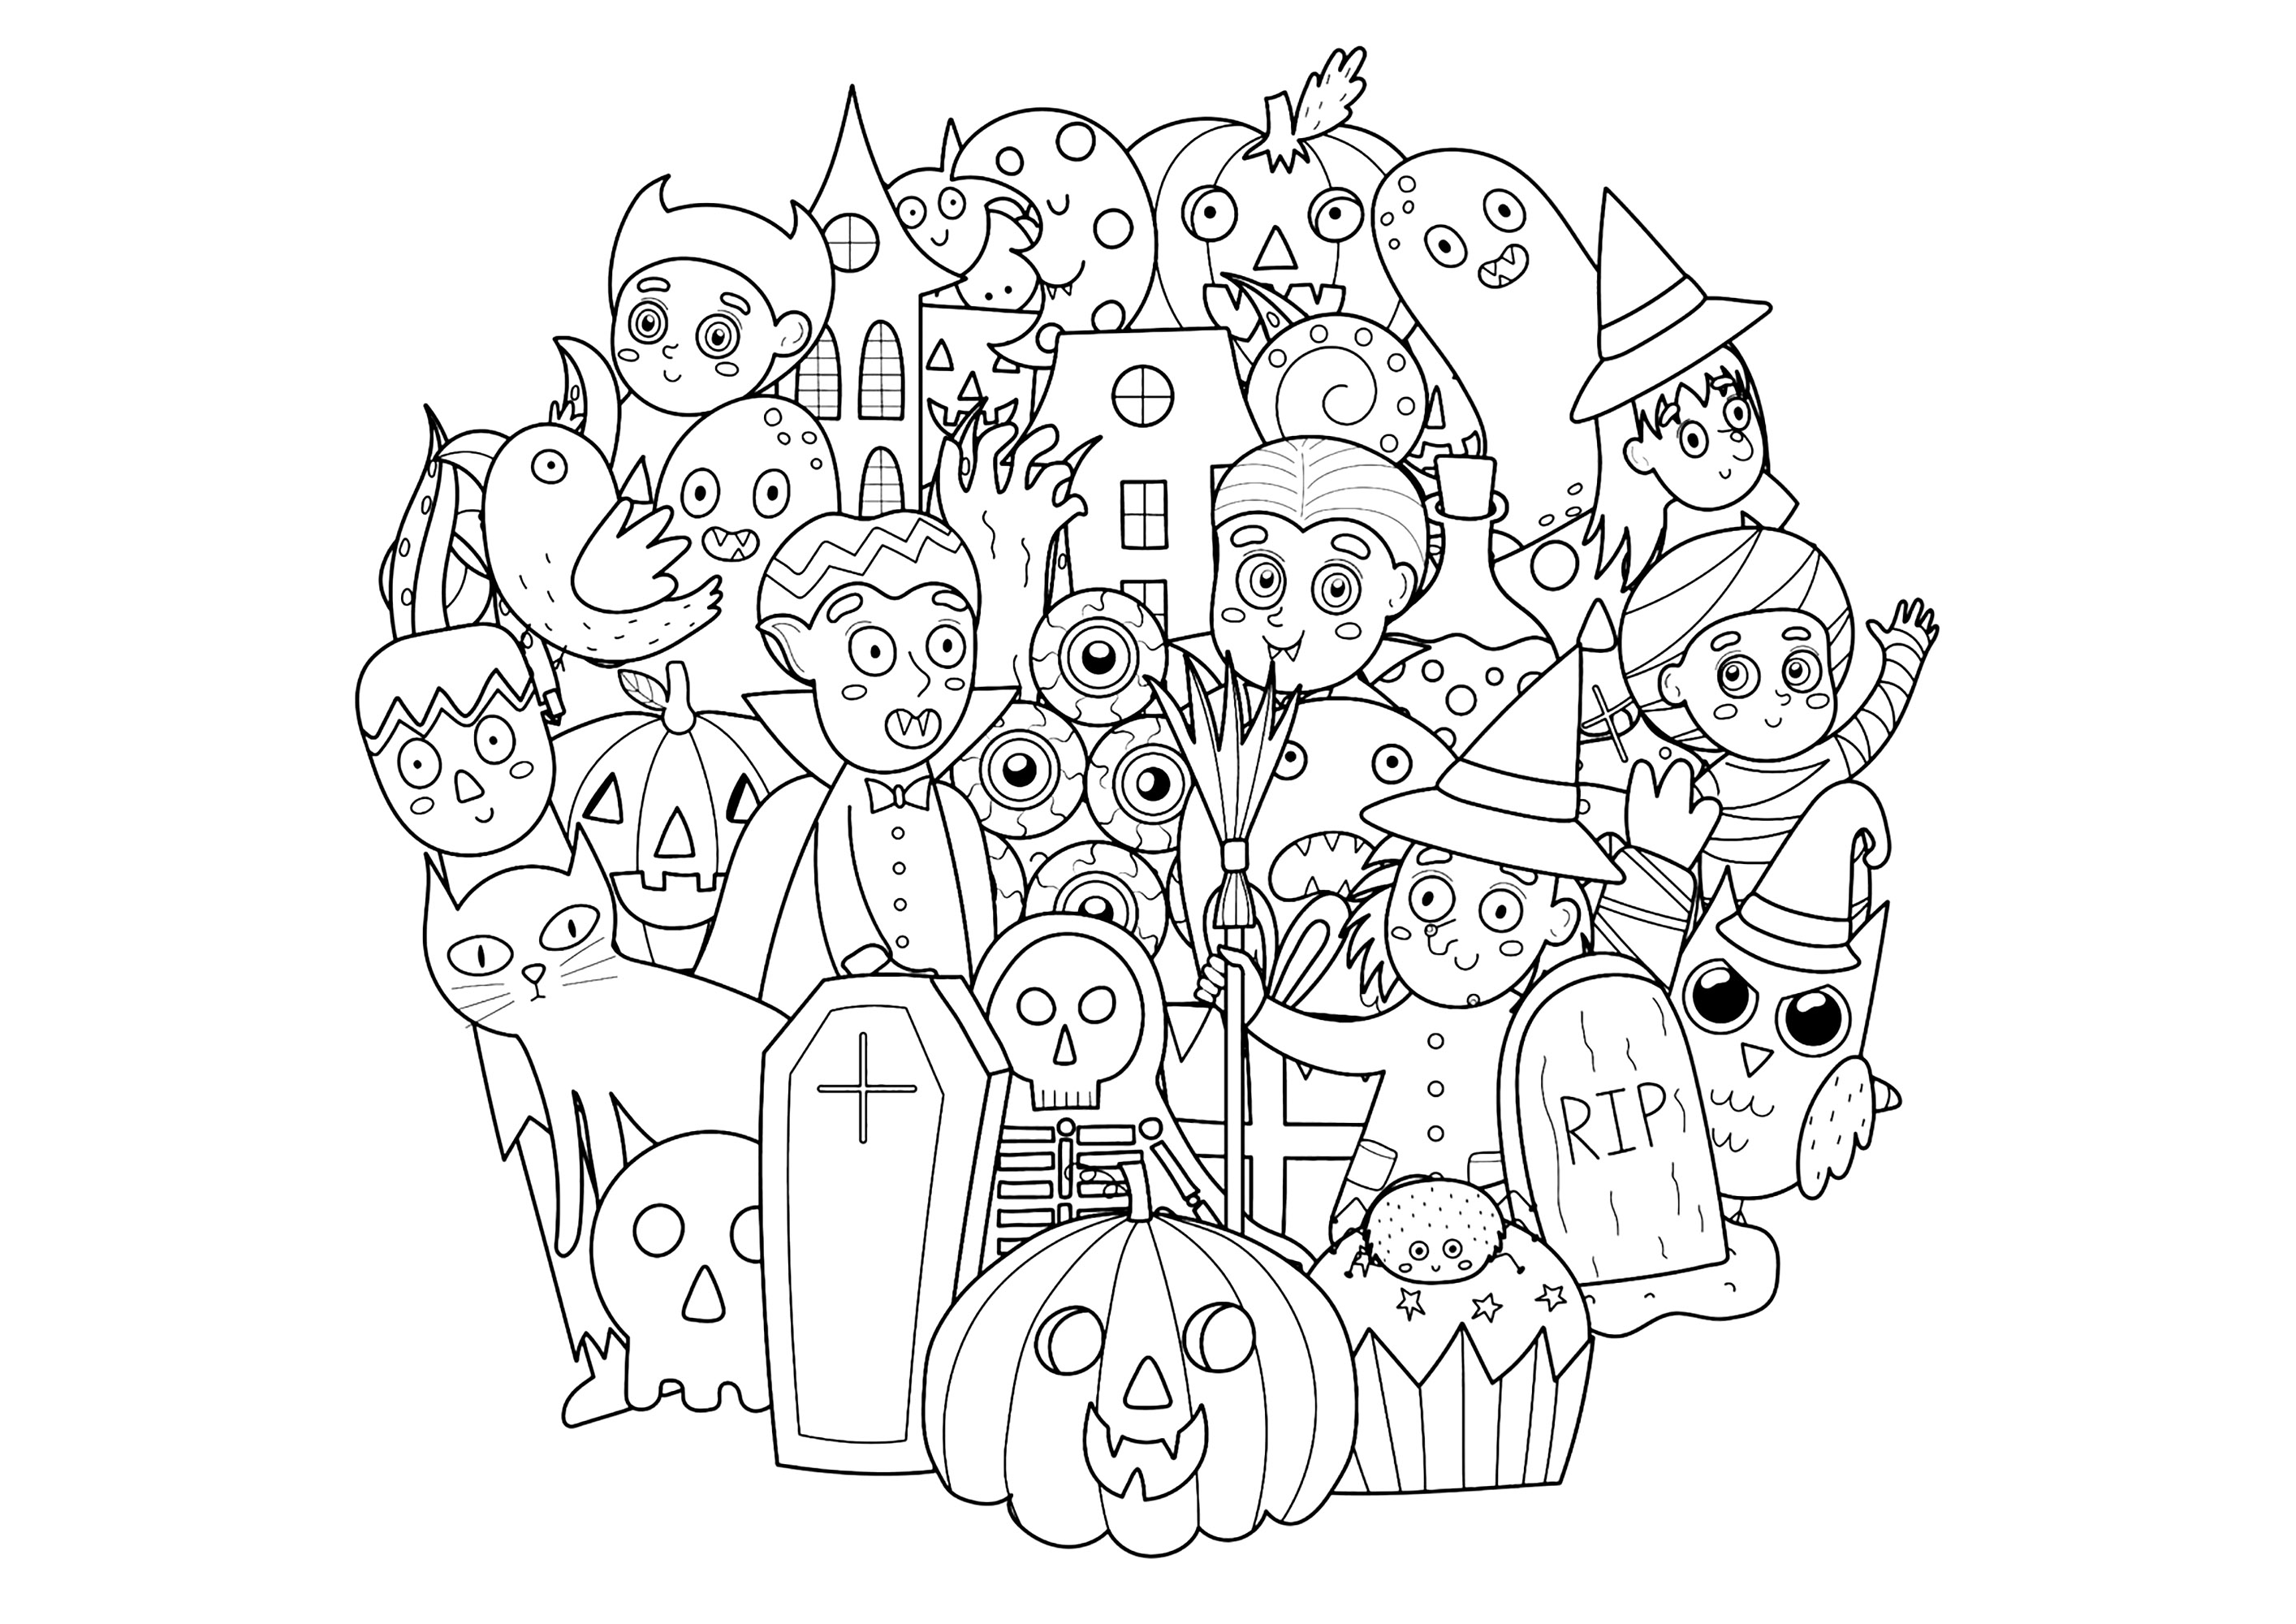 Doodle d'Halloween avec personnages. Divers personnages d'Halloween dans un joli Doodle assez facile à colorier, Source : 123rf   Artiste : Juliyas